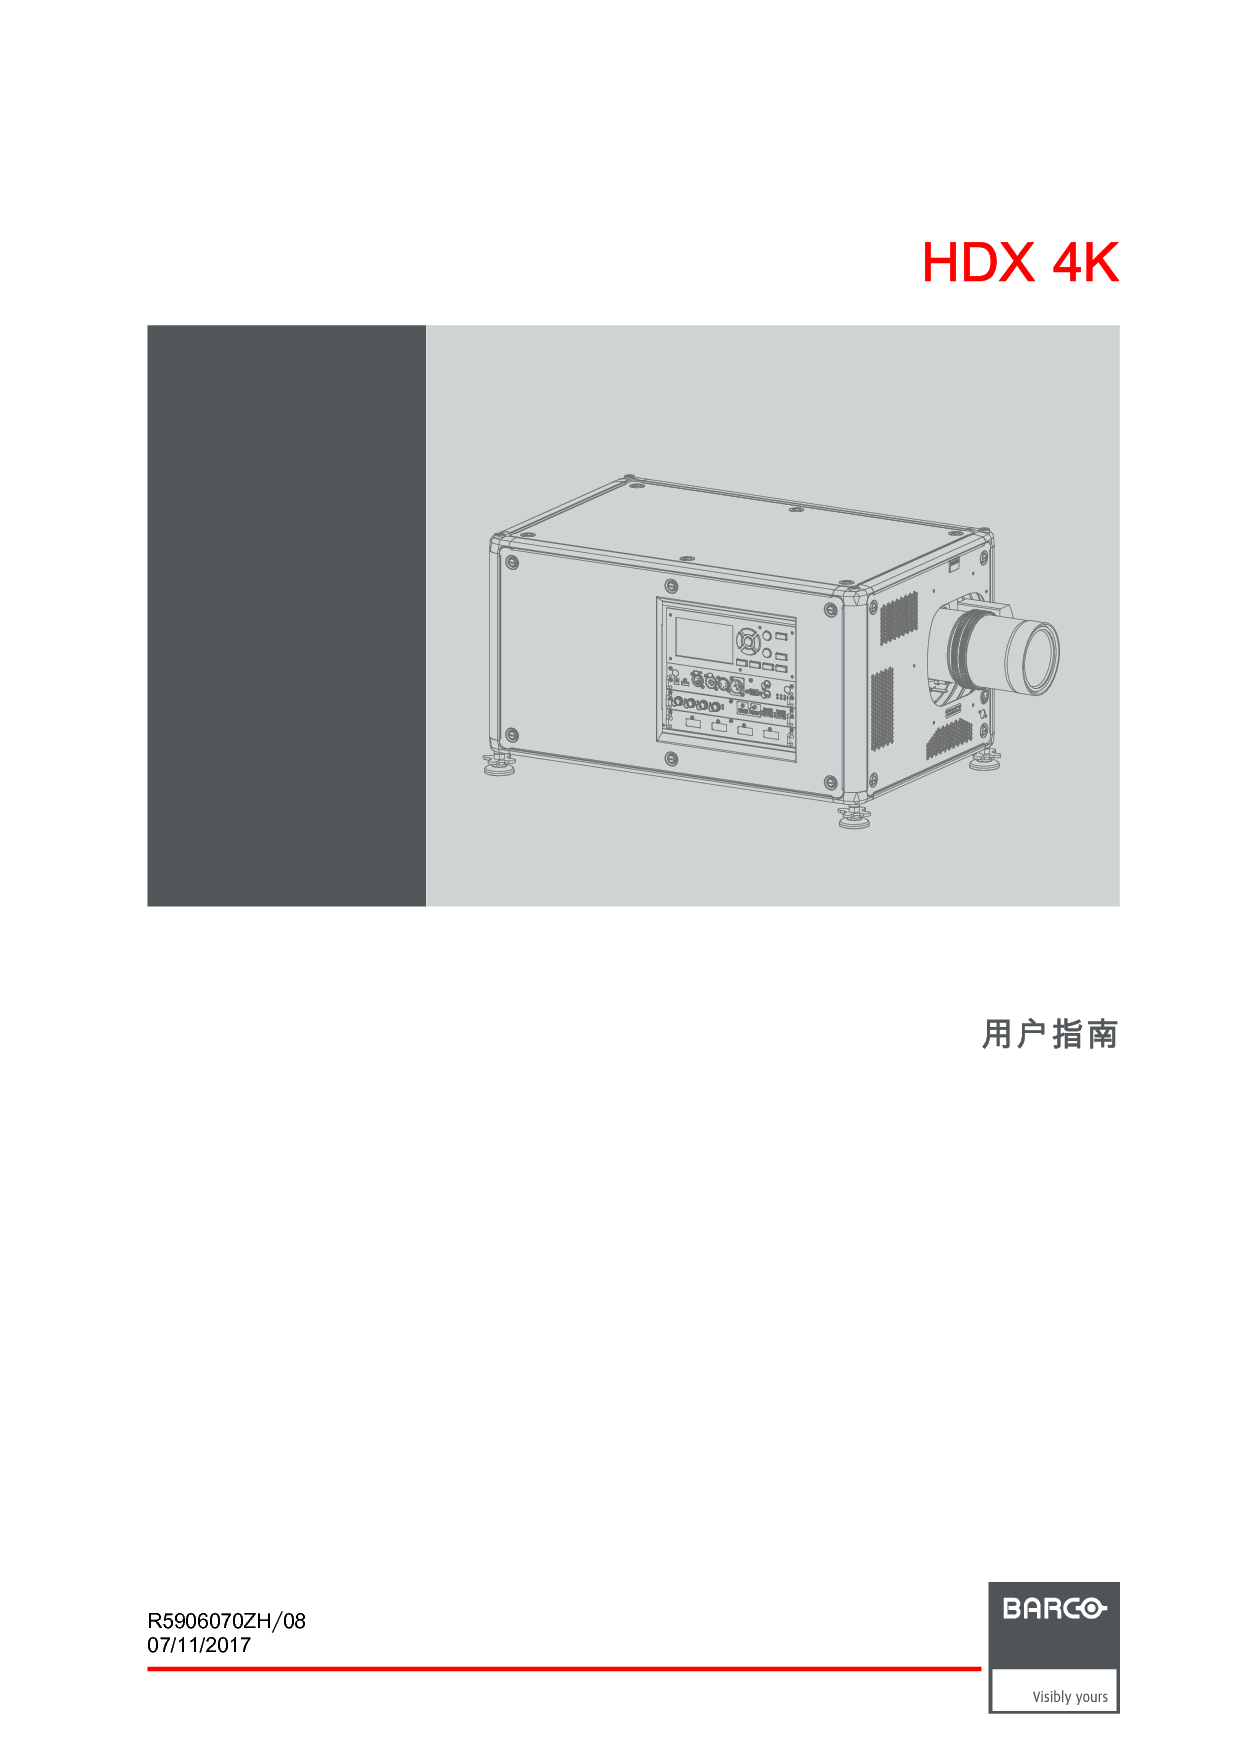 巴可 Barco HDX-4K12, KDX-4K20 FLEX 用户手册 封面